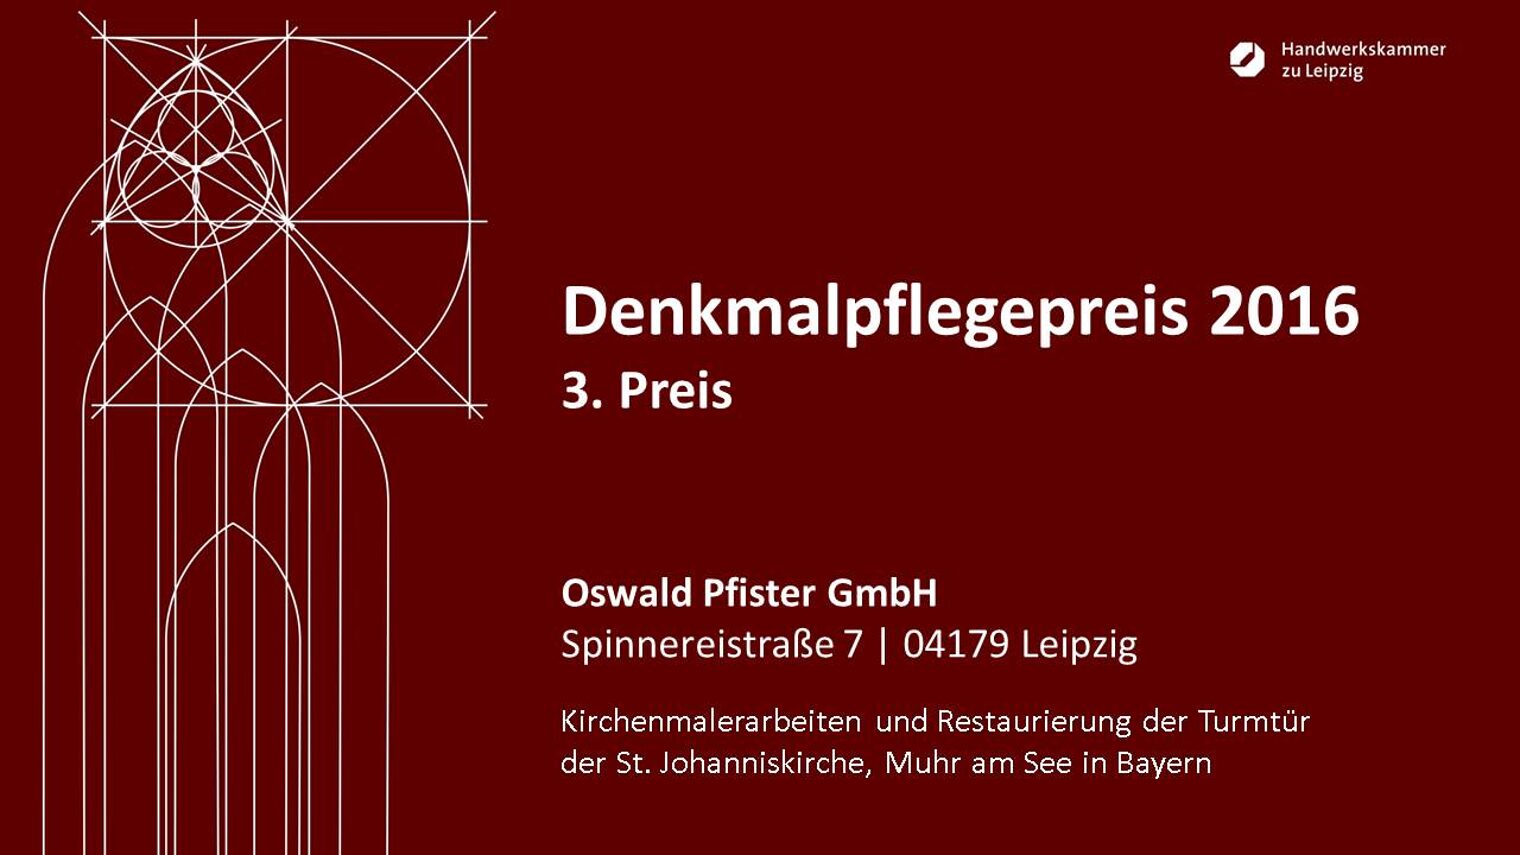 Oswald Pfister GmbH: Kirchenmalerarbeiten und Restaurierung der Turmtür der St. Johanniskirche, Muhr am See in Bayern.